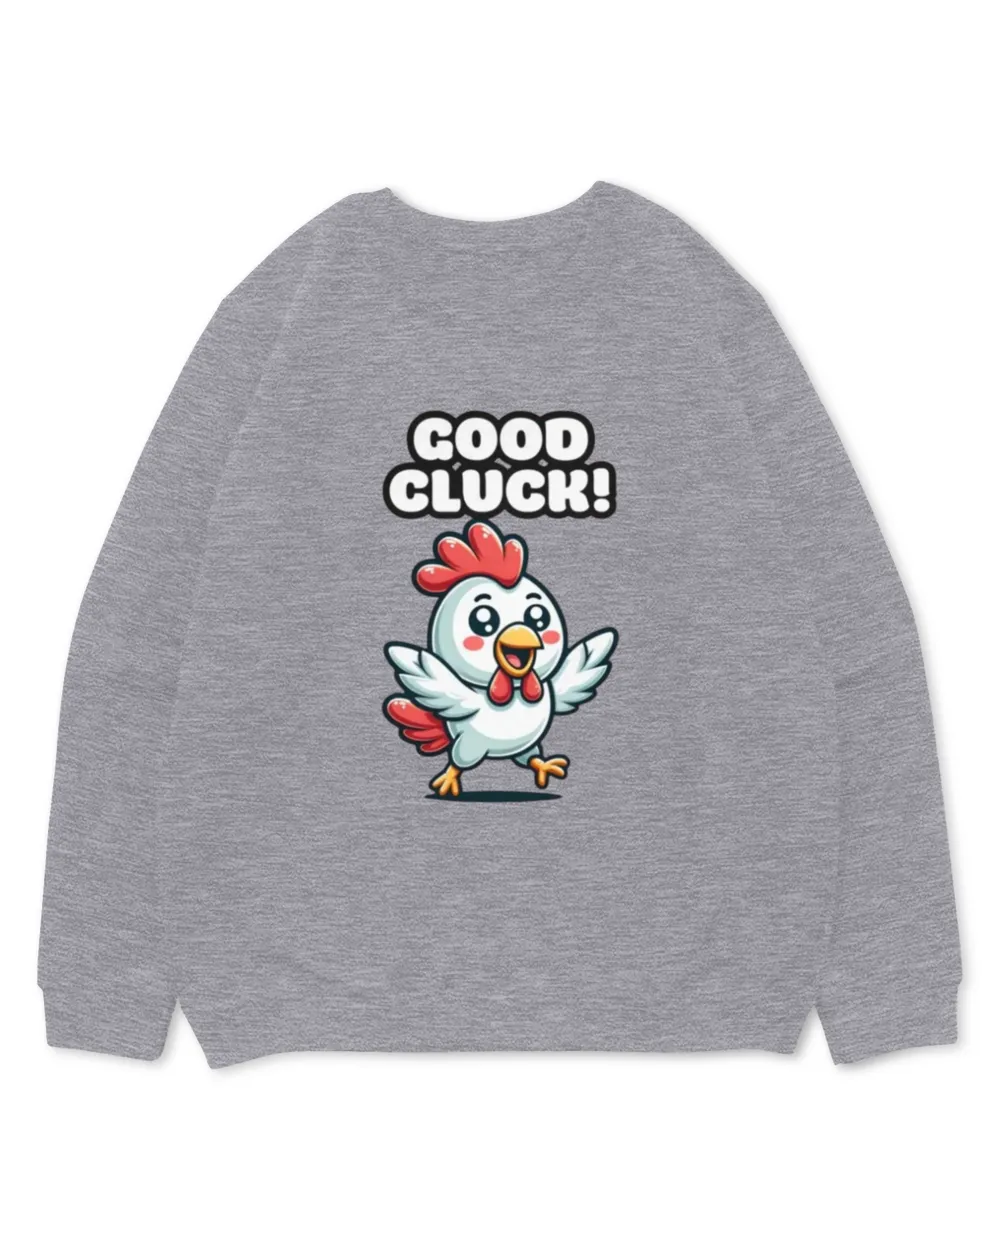 Good Cluck - Chicken T-shirt